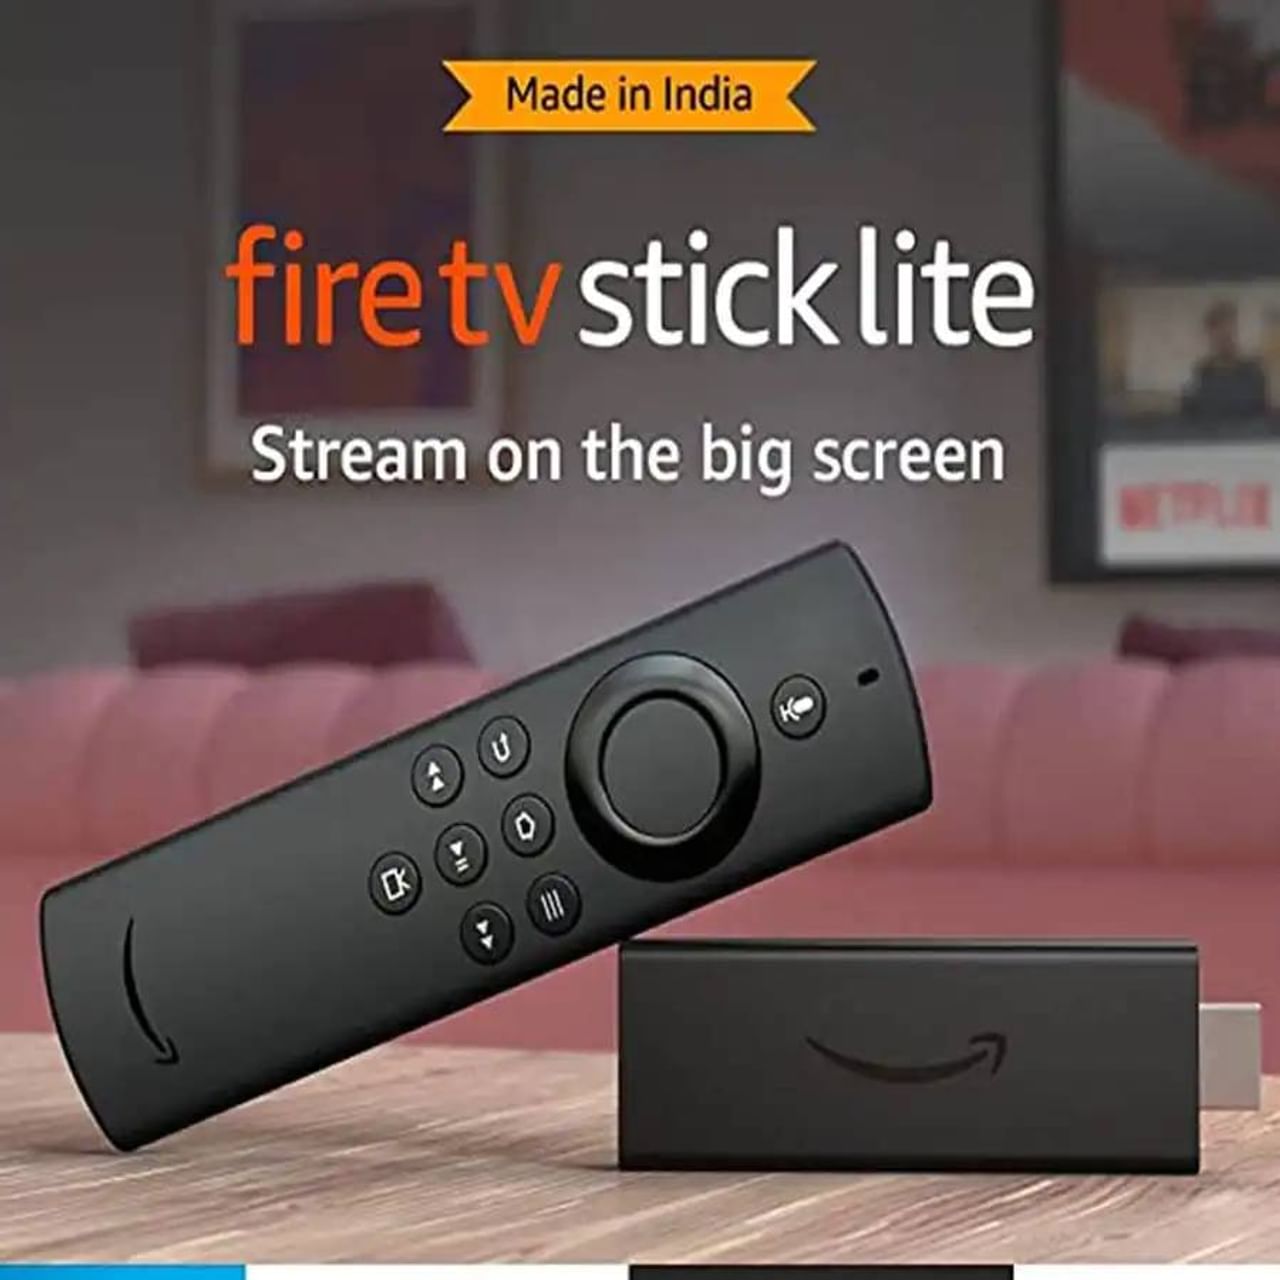 Amazon Fire TV Stick Lite Price in India: Amazon ने आपली Fire TV Stick रीफ्रेश केली आहे आणि आता कंपनीने Amazon Fire TV Stick Lite 2022 सादर केली आहे. ही नवीनतम आवृत्ती आहे. यापूर्वी, कंपनीने 2020 मध्ये फायर टीव्ही स्टिक लाइट सादर केले होते